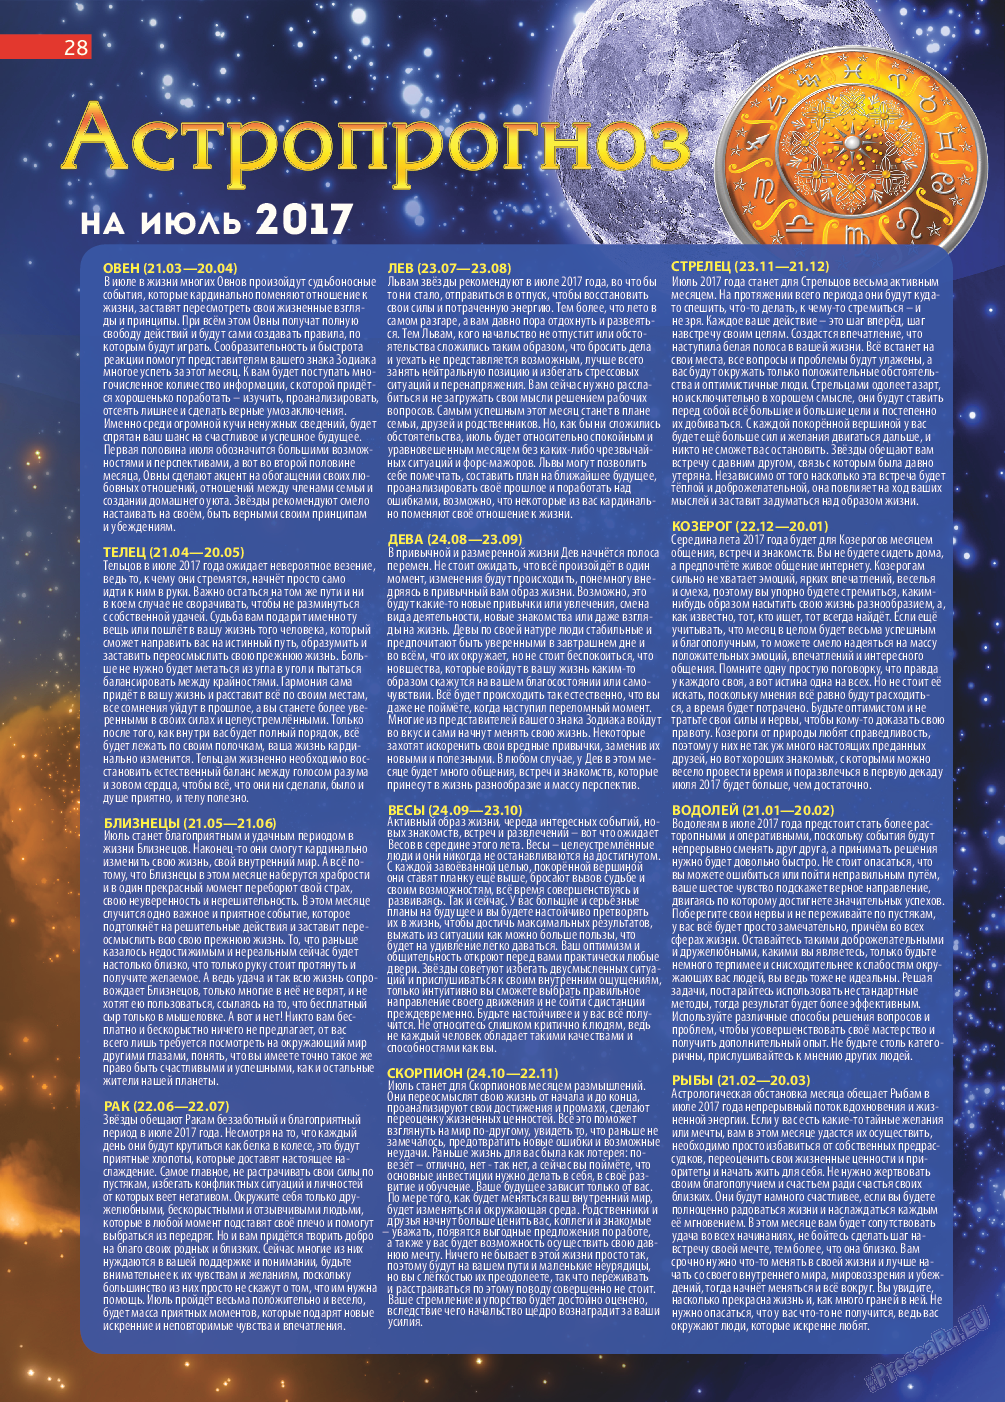 Афиша Augsburg (журнал). 2017 год, номер 7, стр. 28